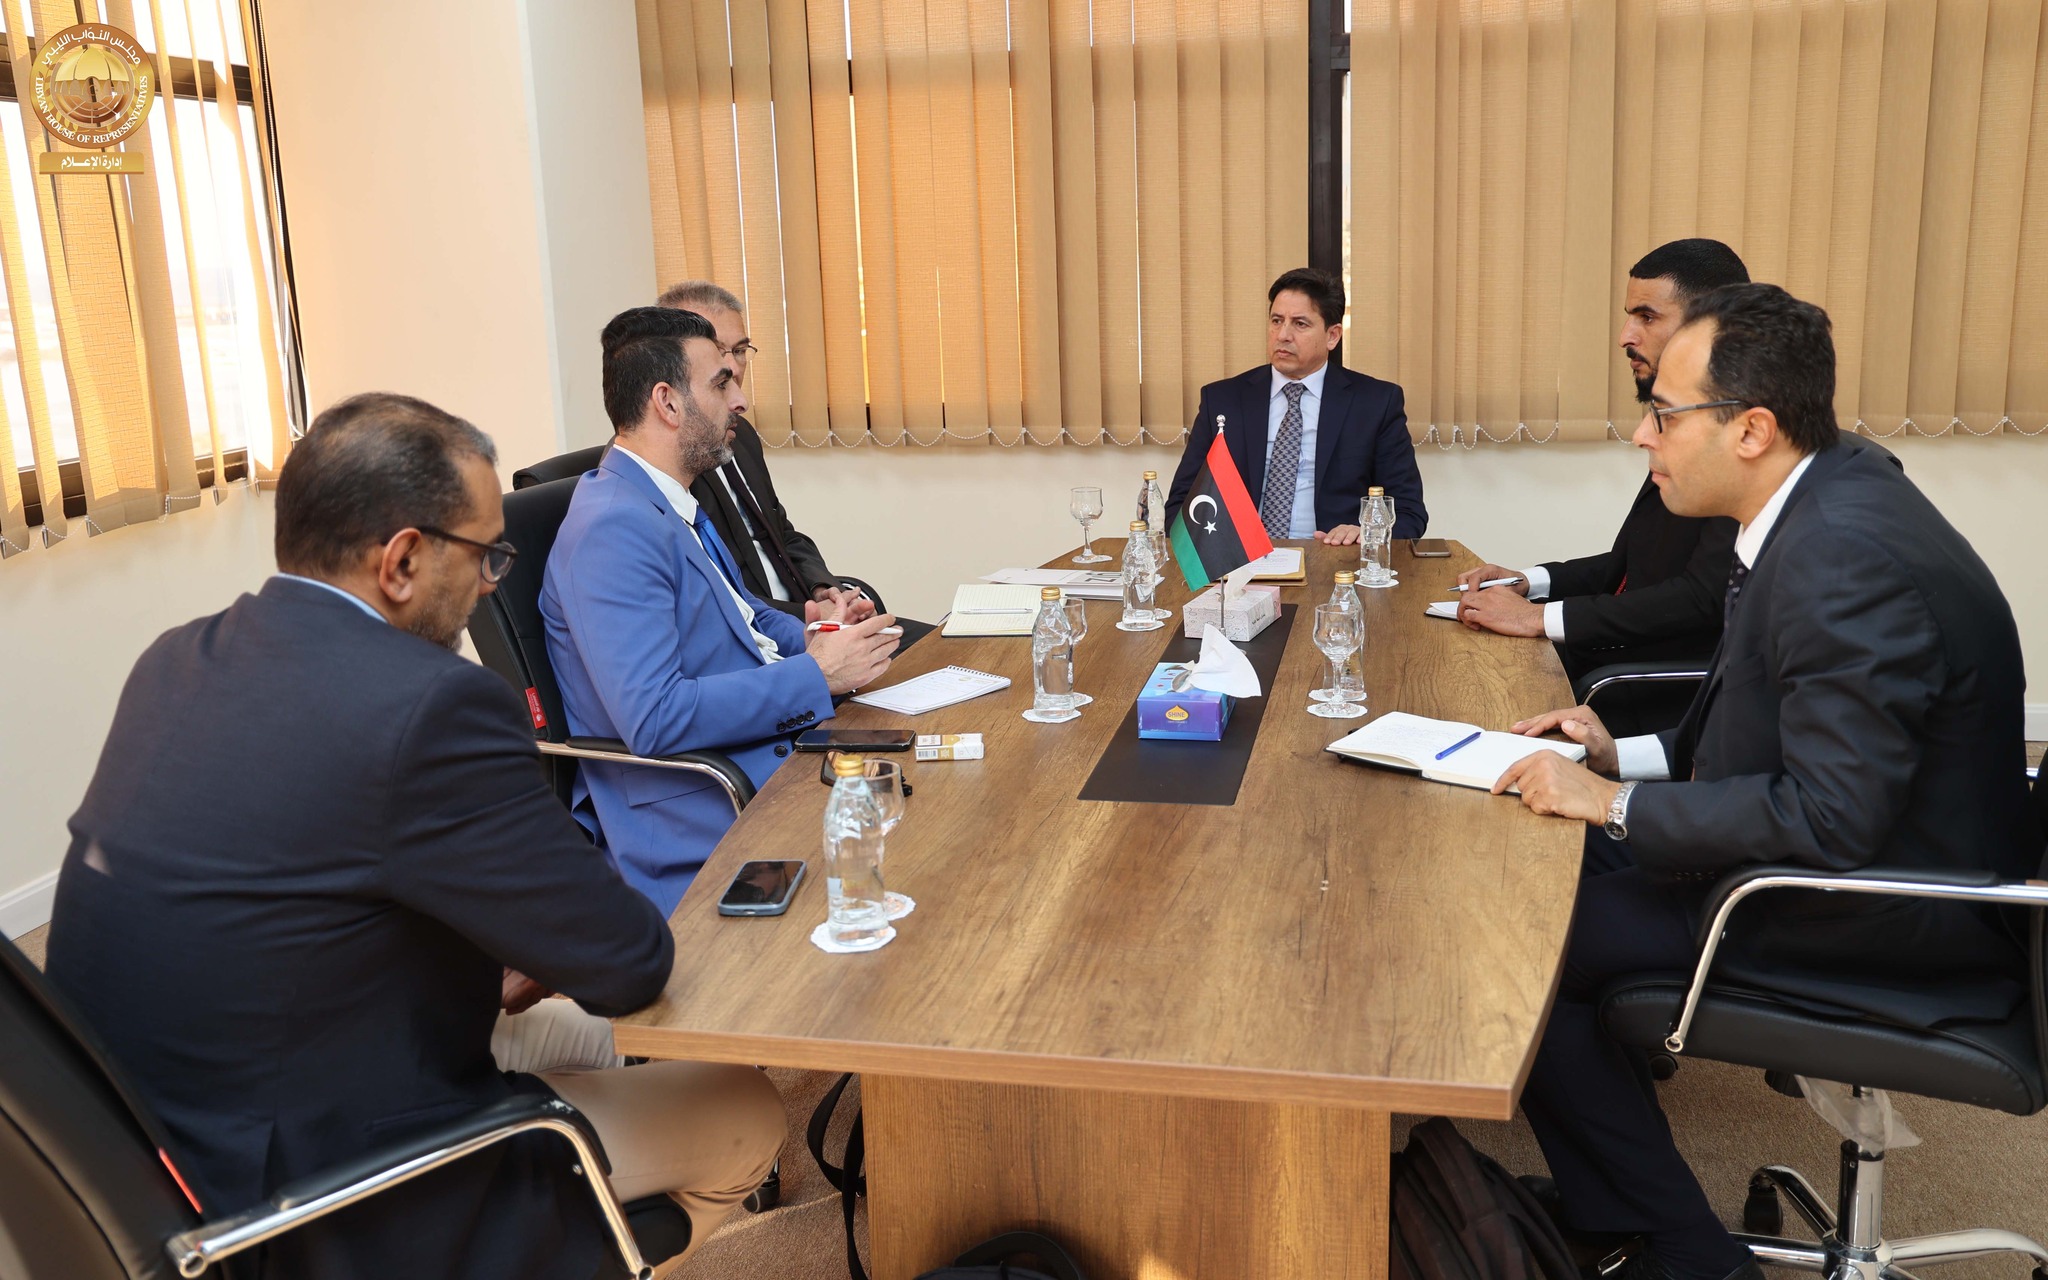  العقوري يلتقي مع المدير الإقليمي للمؤسسة الألمانية للتعاون الدولي ( GiZ ) بمقر ديوان مجلس النواب في بنغازي . 